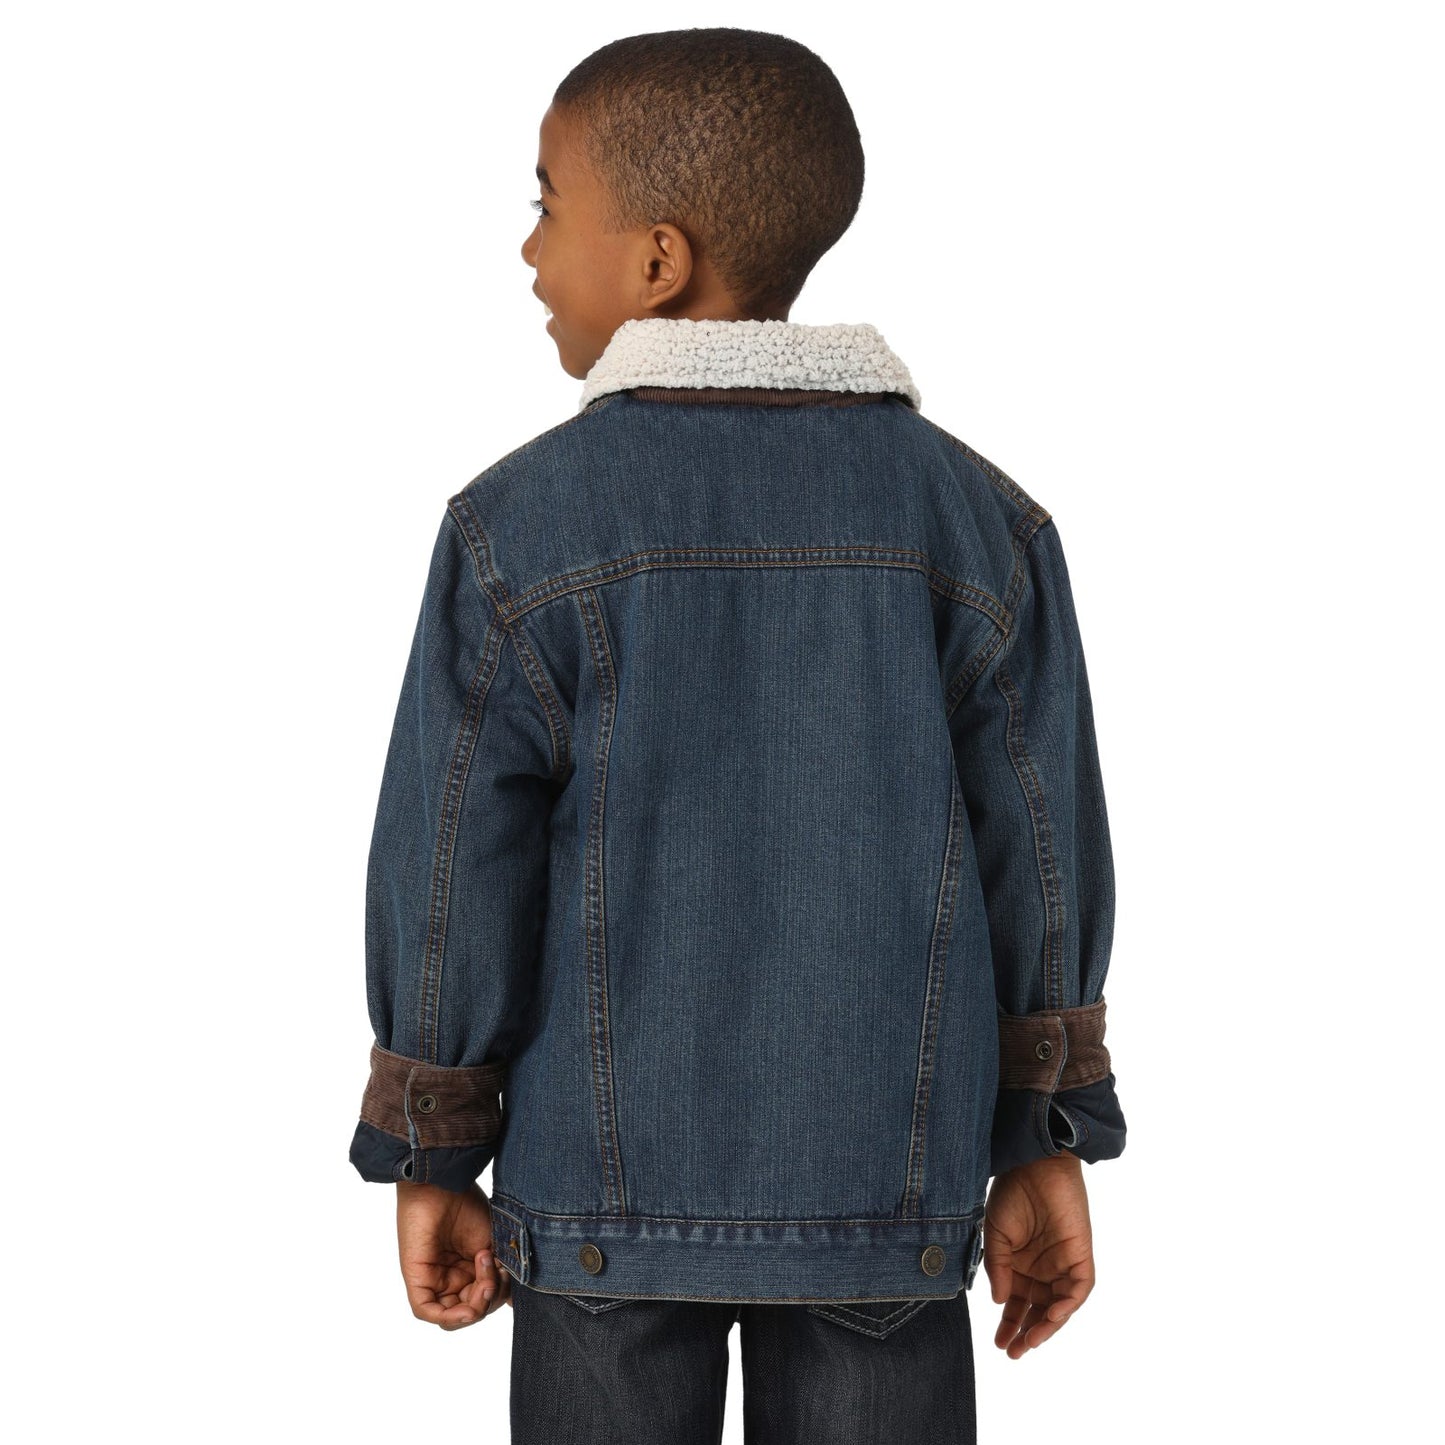 Boy's Wrangler Western Sherpa Lined Rustic Blue Denim Jacket